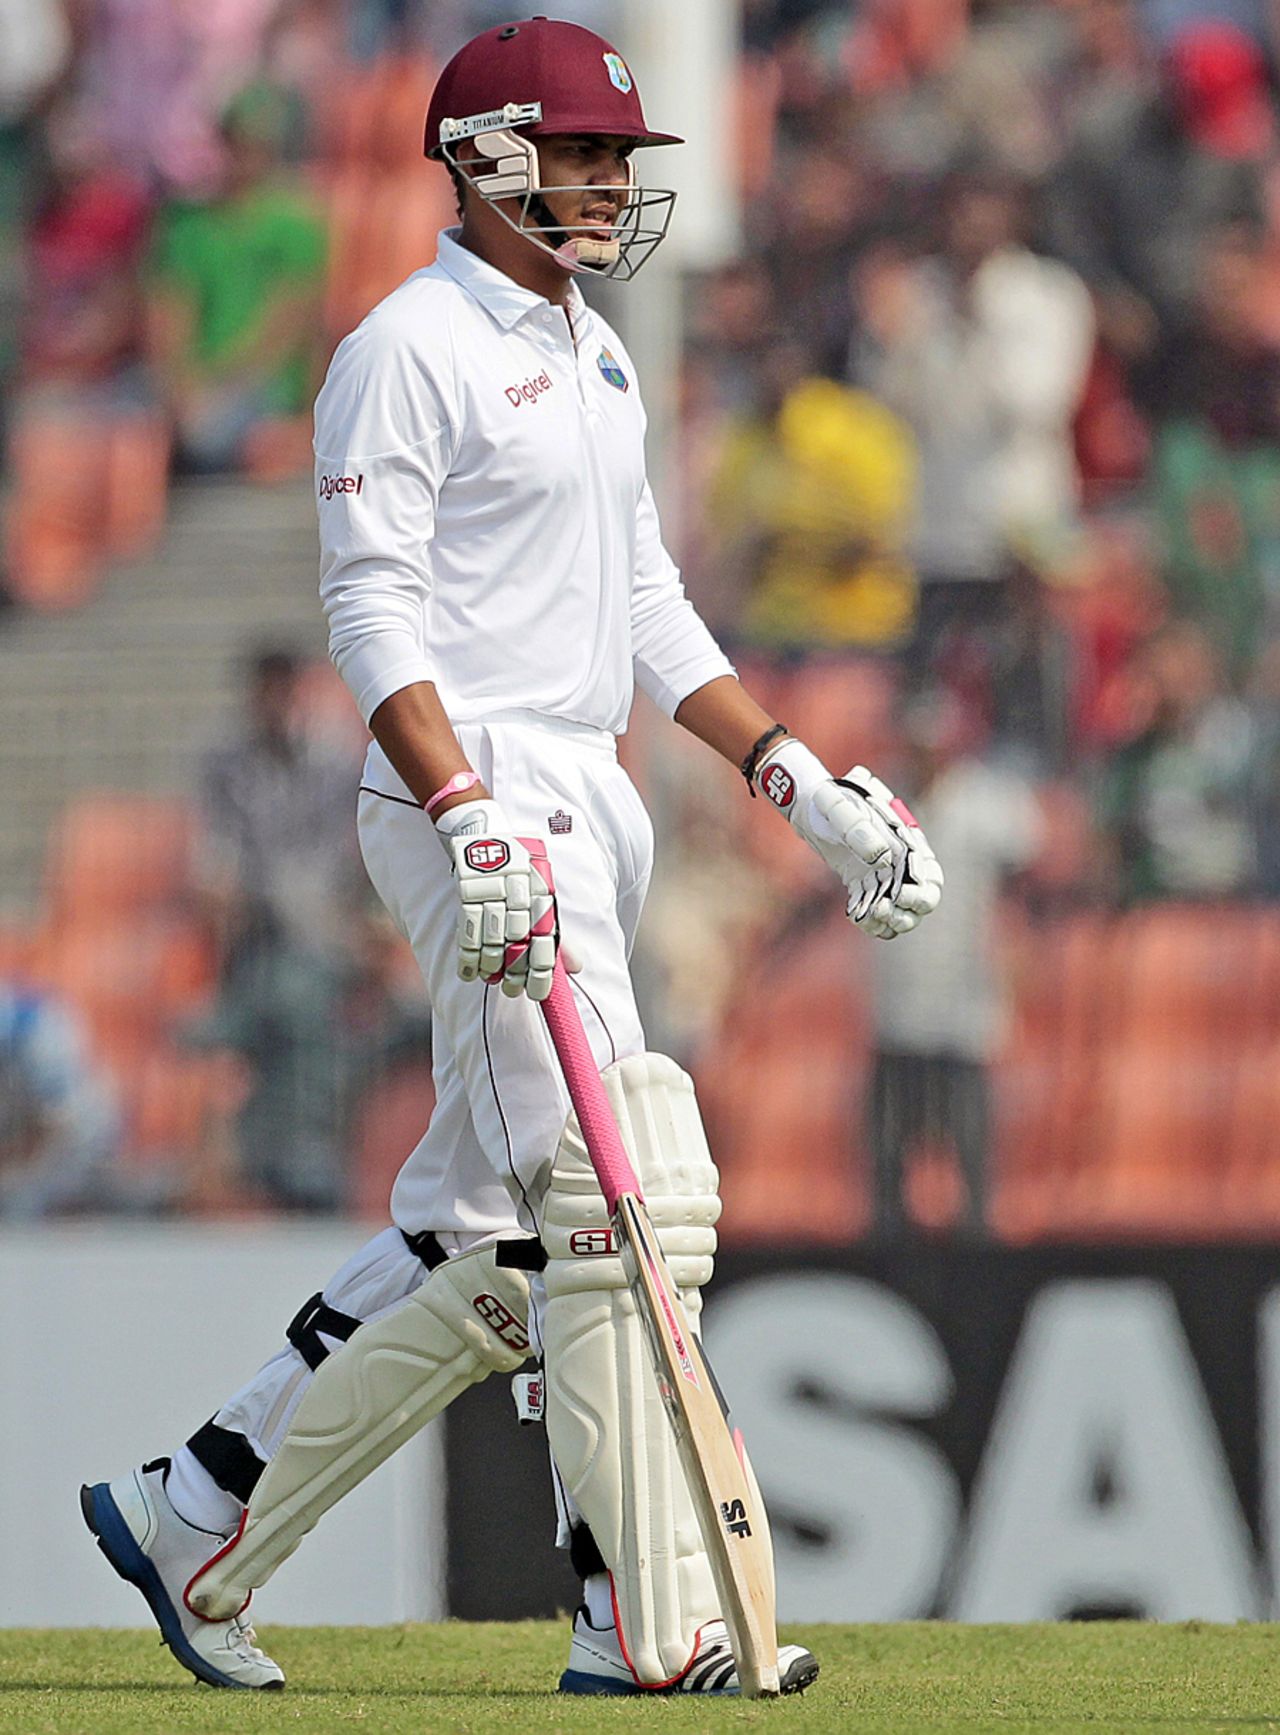 Sunil Narine walks back after being dismissed, Bangladesh v West Indies, 2nd Test, Khulna, 4th day, November 24, 2012